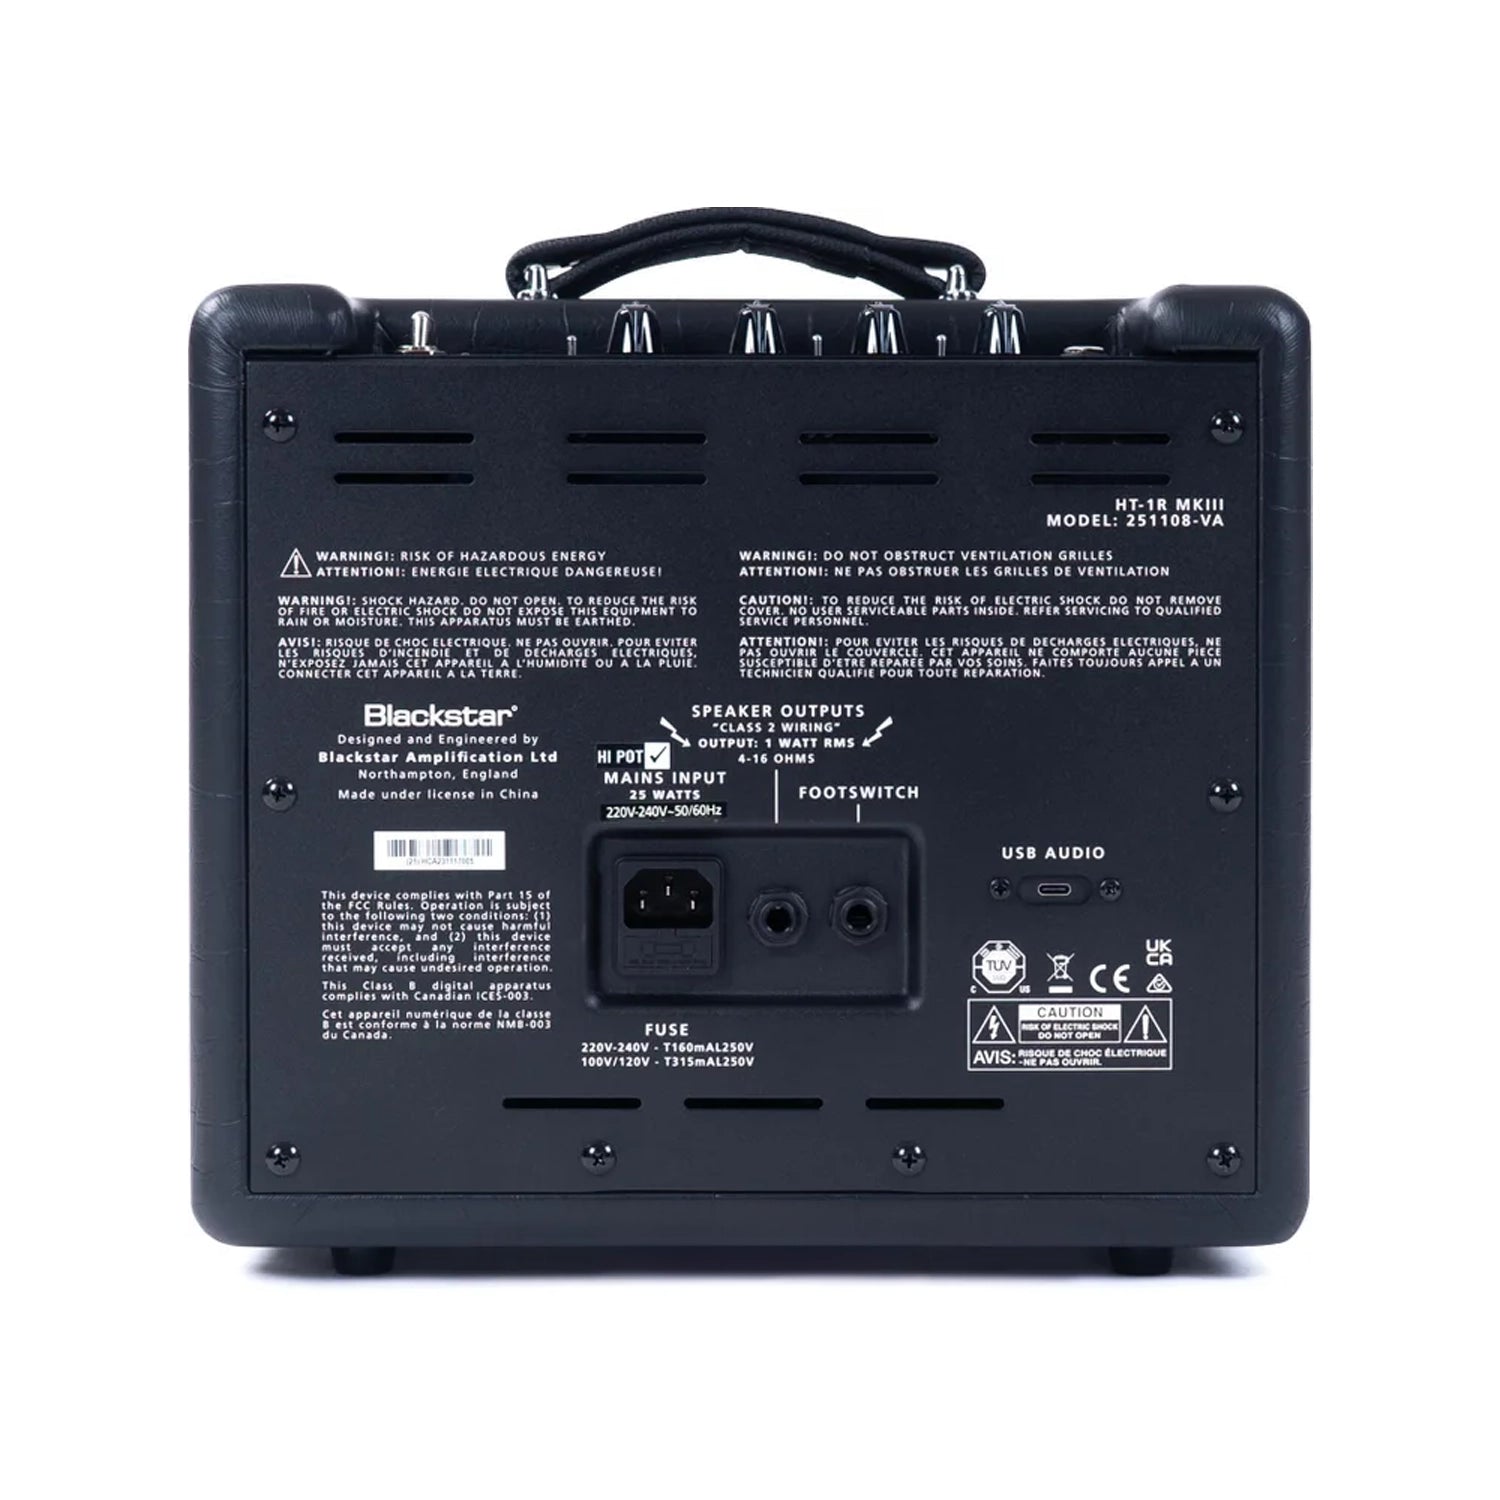 Blackstar HT-1R MK III 1 x 8-inch 1-watt Tube Combo Amplifier